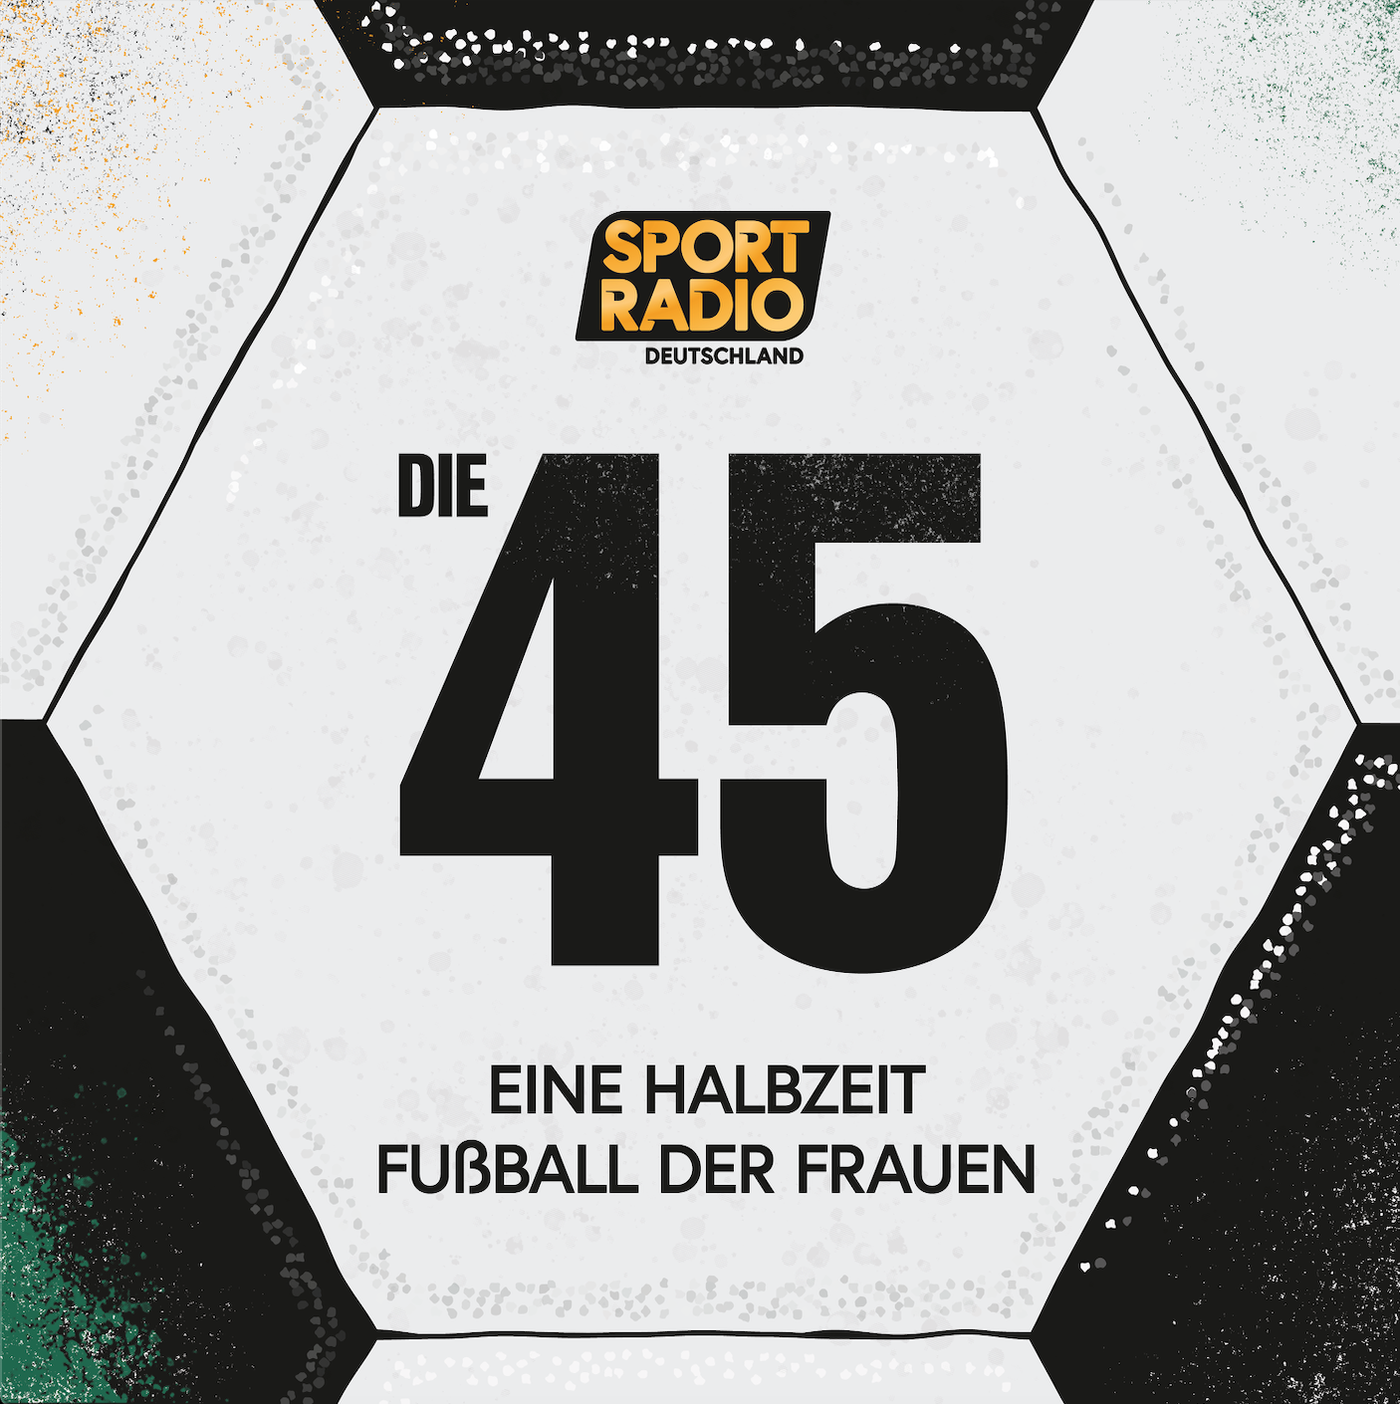 45 +21 - Bundesliga auf Schlitten